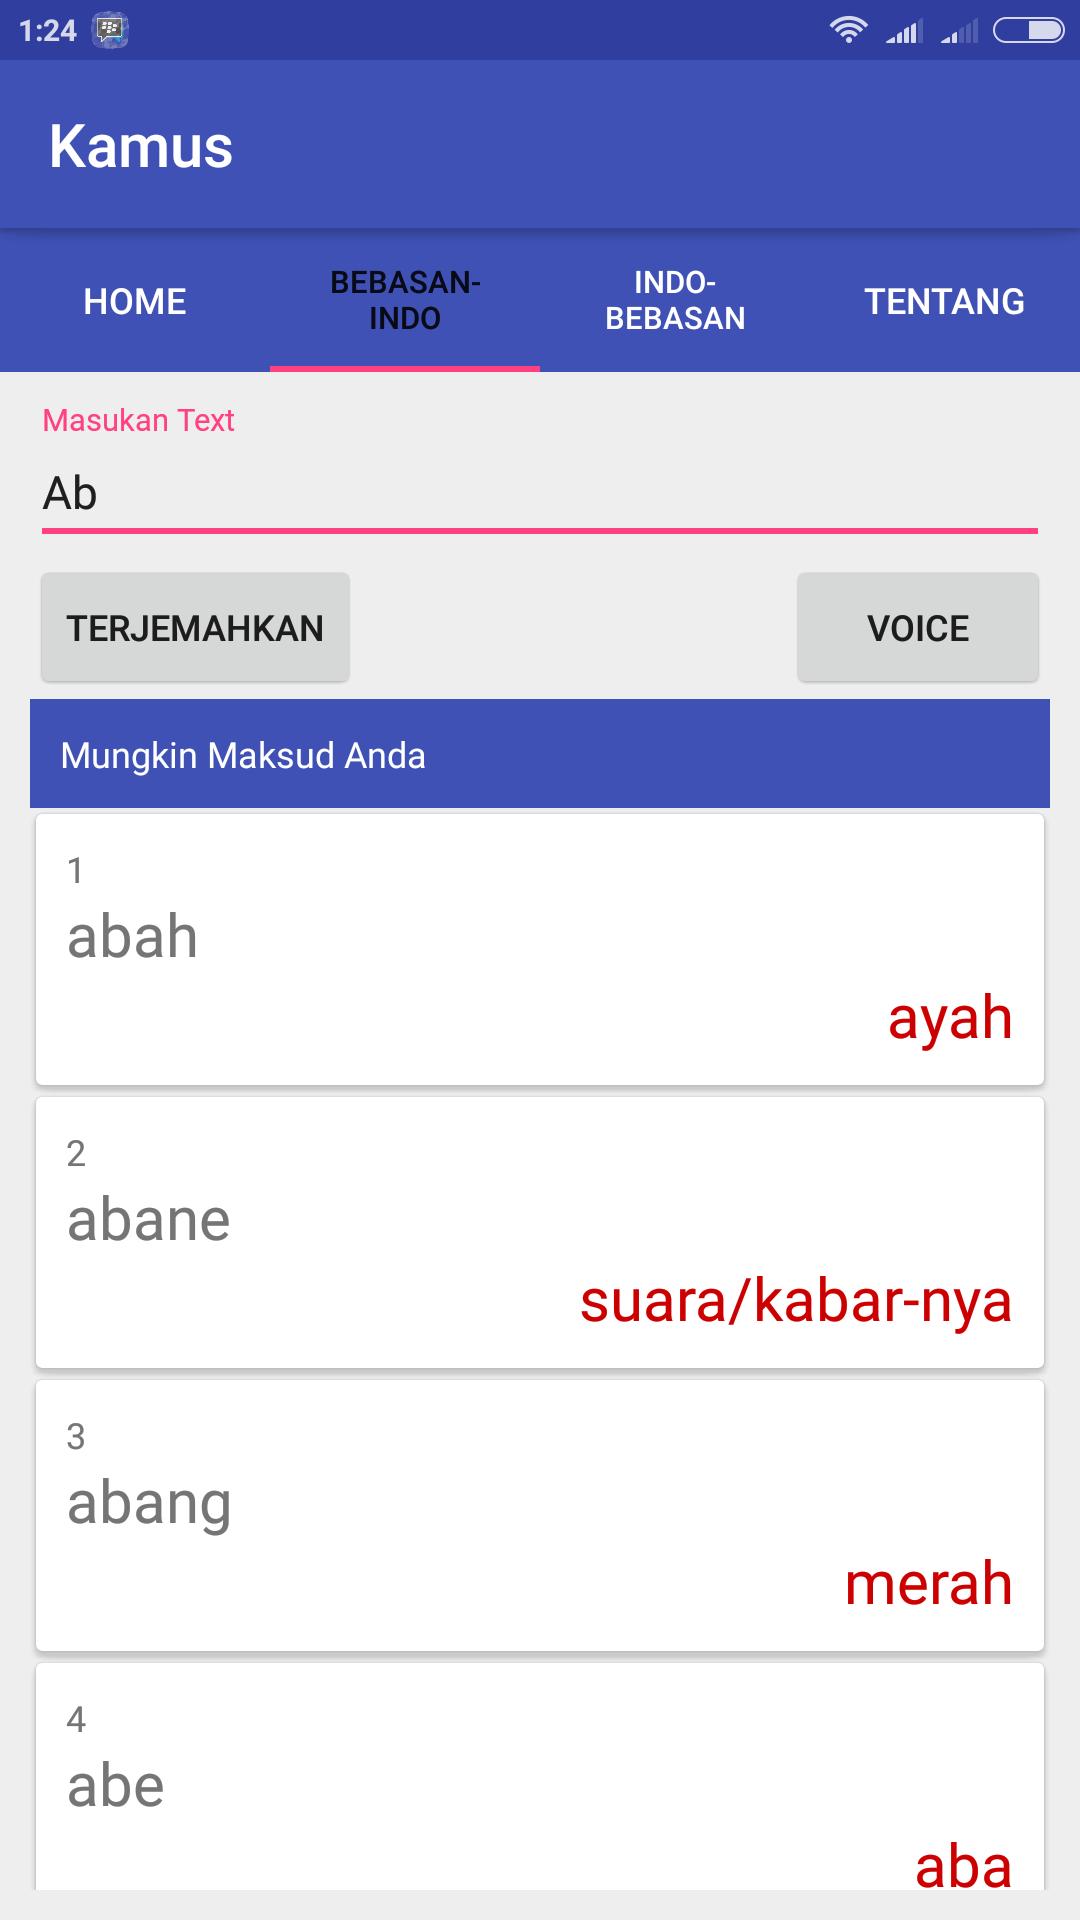 Aplikasi Kamus Bebasan Indonesia For Android Apk Download